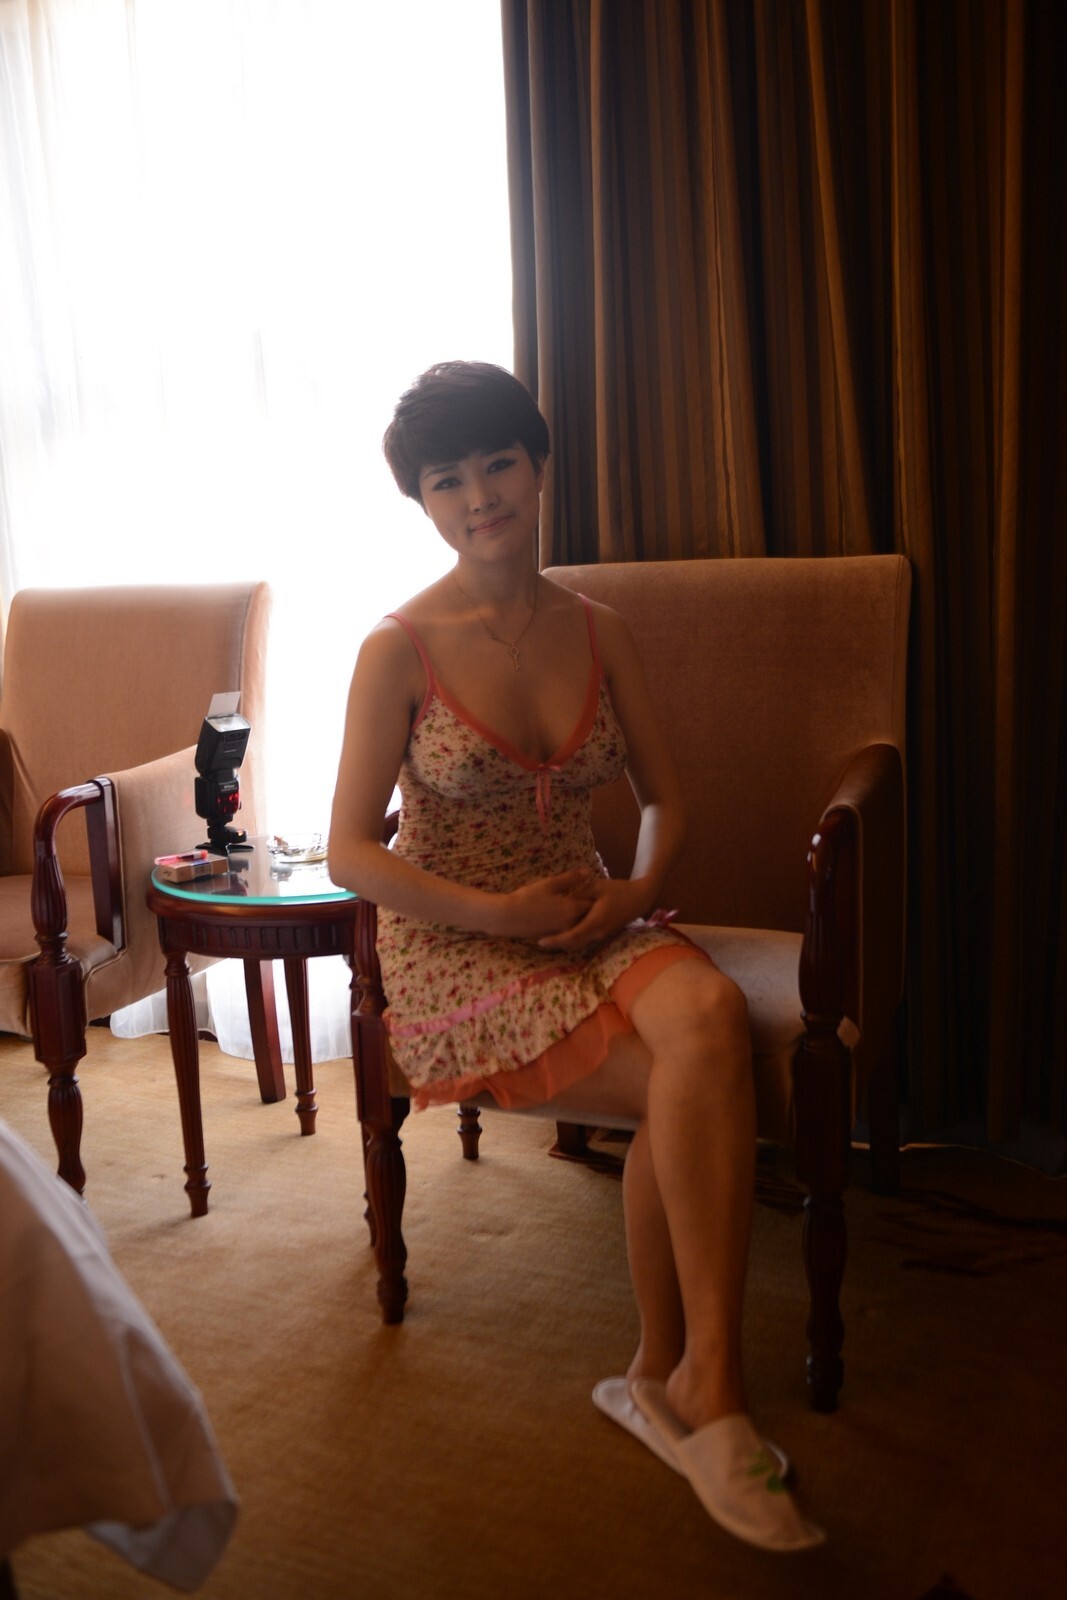 [Xiwei society] Xiwei society Portrait Photography - young woman Xiaoyun 2